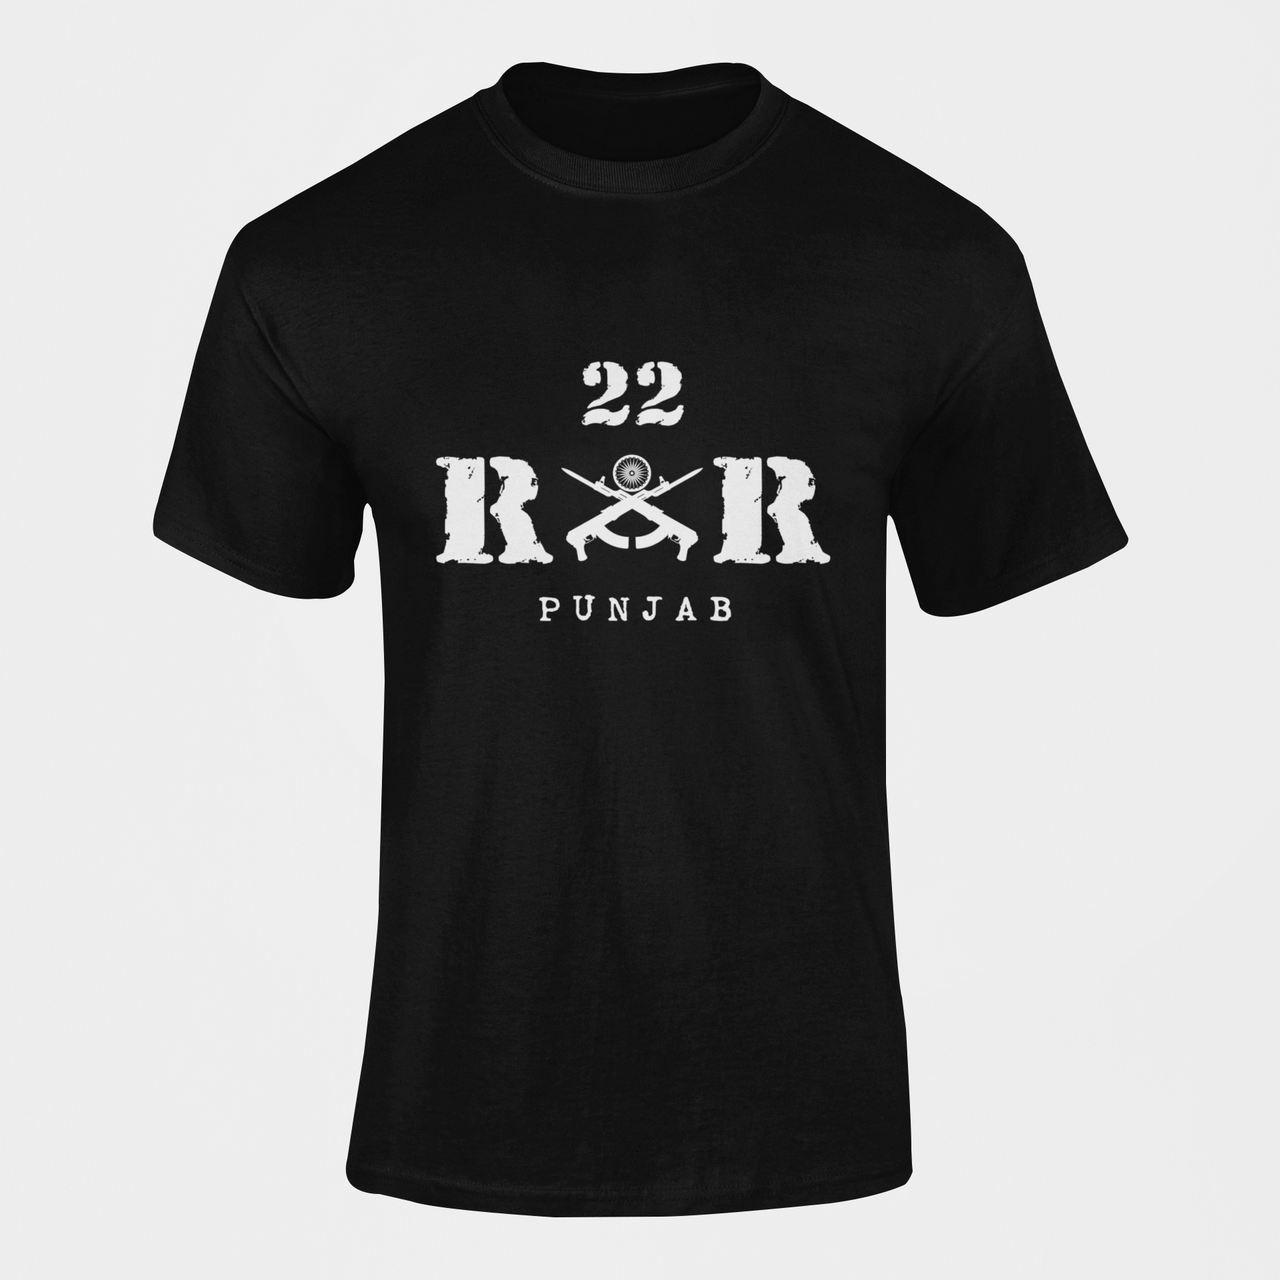 Rashtriya Rifles T-shirt - 22 RR Punjab (Men)